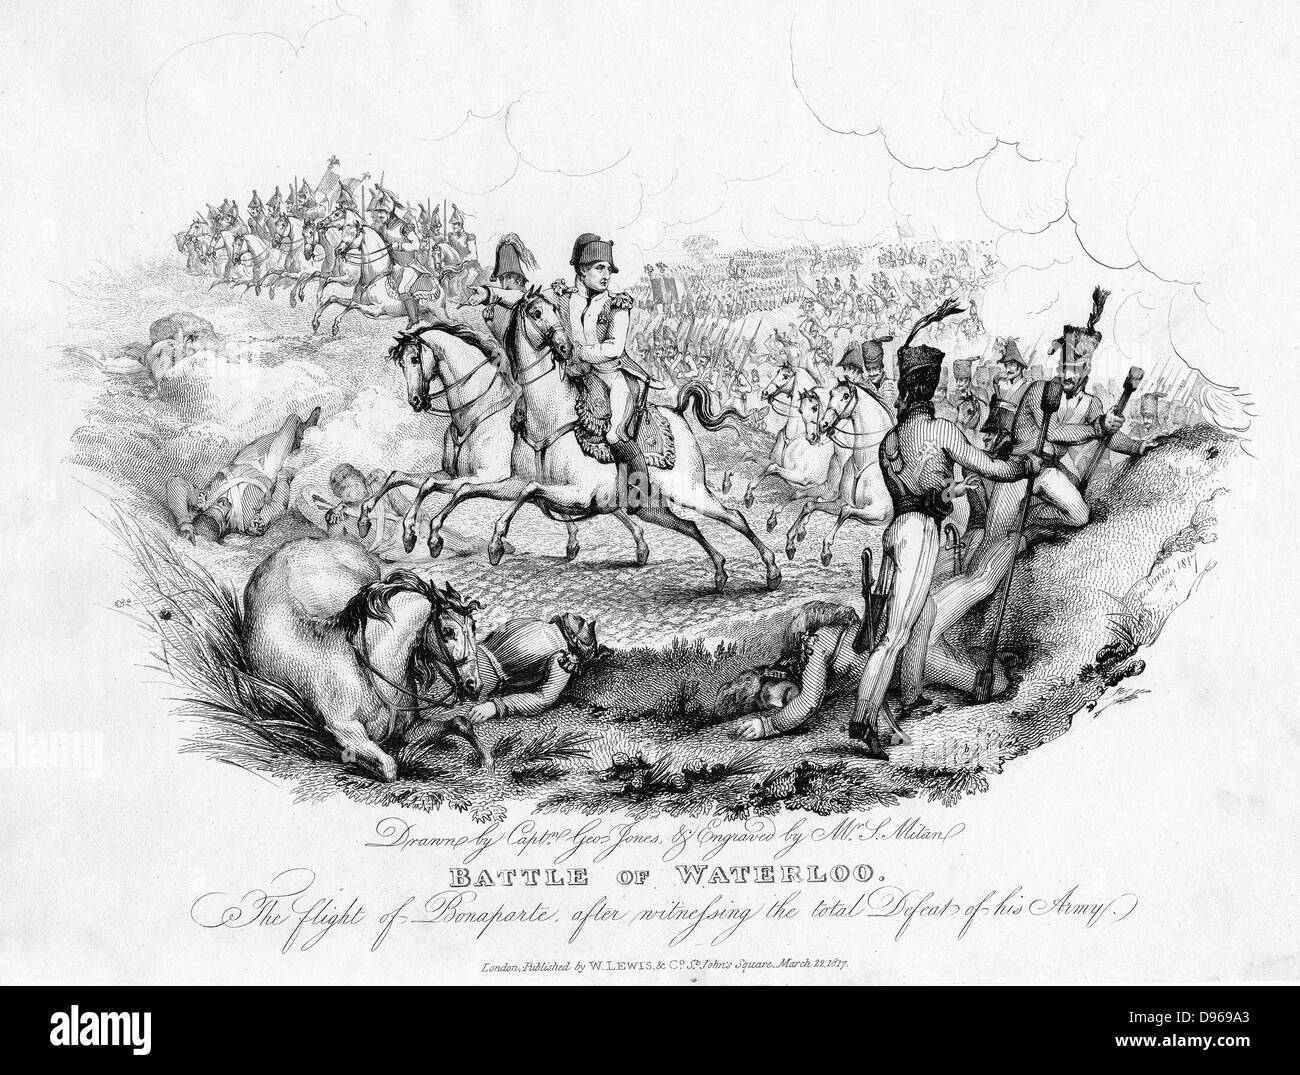 Napoléon (1769-1821) soldat français et l'empereur, fuyant le champ de bataille de Waterloo après sa défaite. À partir de l'élaboration par le capitaine George Jones. À partir de la CH Gifford 'histoire des guerres occasionnés par la Révolution Française" 1817. Gravure Banque D'Images